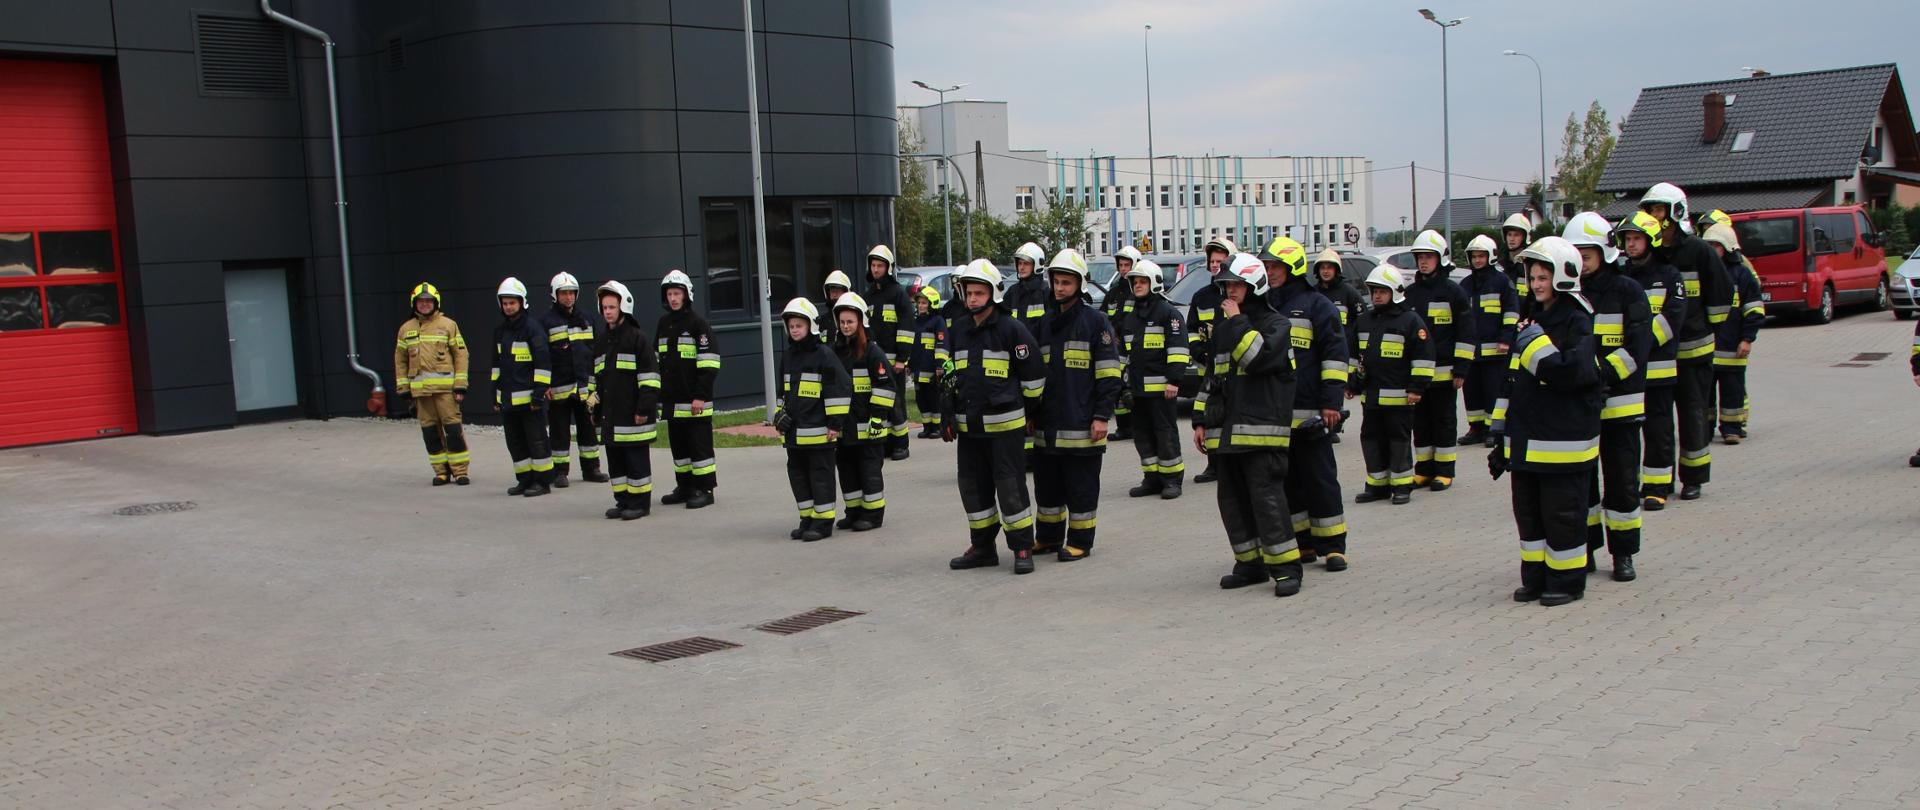 zdjęcie przedstawia zbiórkę strażaków którzy wezmą udział w szkolenie podstawowe strażaków ratowników Ochotniczych Straży Pożarnych